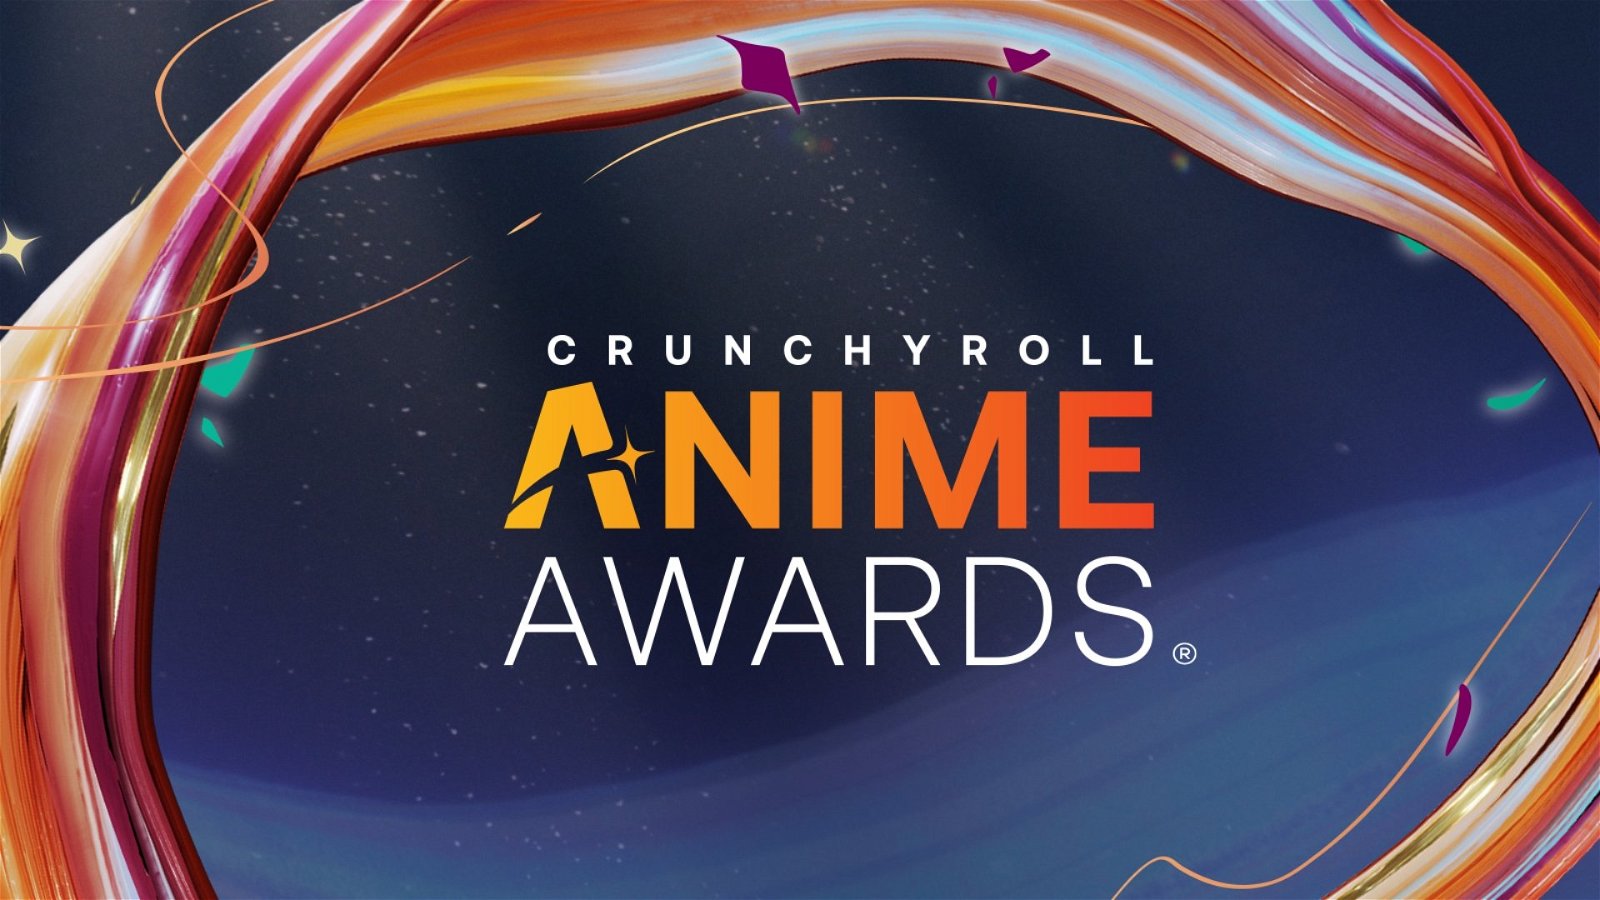 My Hero Academia Announces 4th Theatrical Anime Film - Crunchyroll News